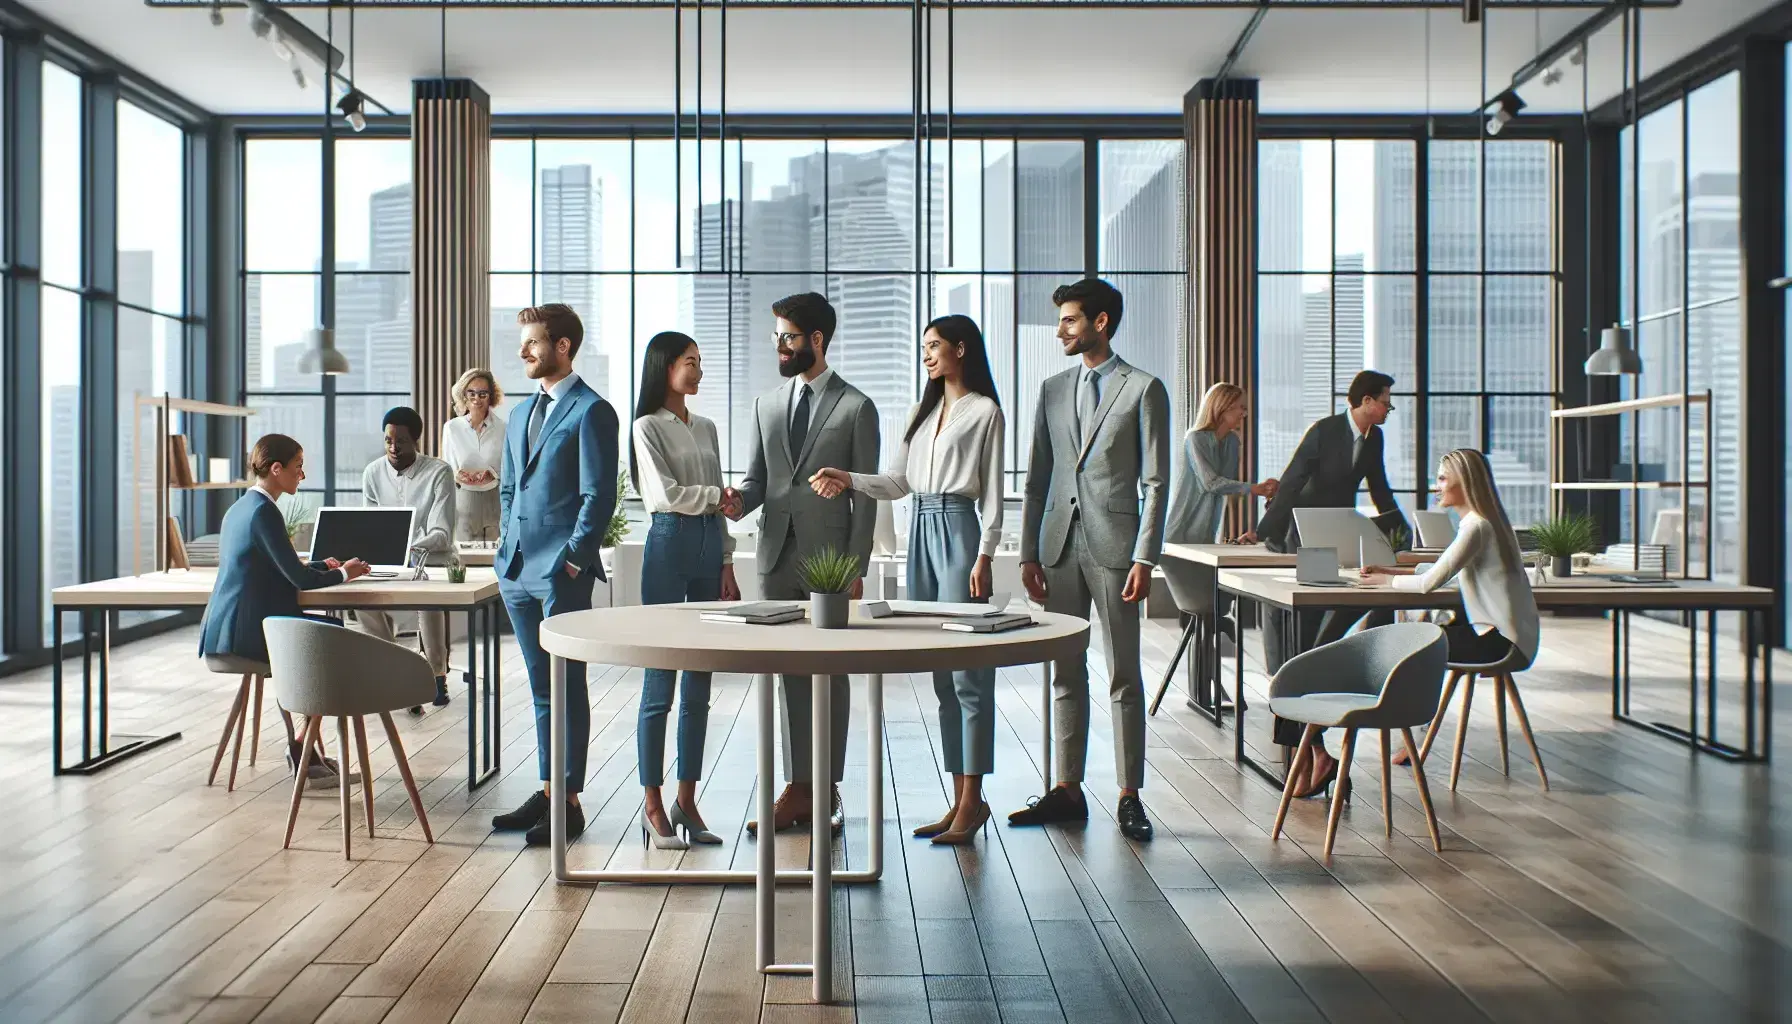 Grupo diverso de profesionales en oficina moderna con grandes ventanas, algunos estrechando la mano alrededor de una mesa redonda y otros trabajando.